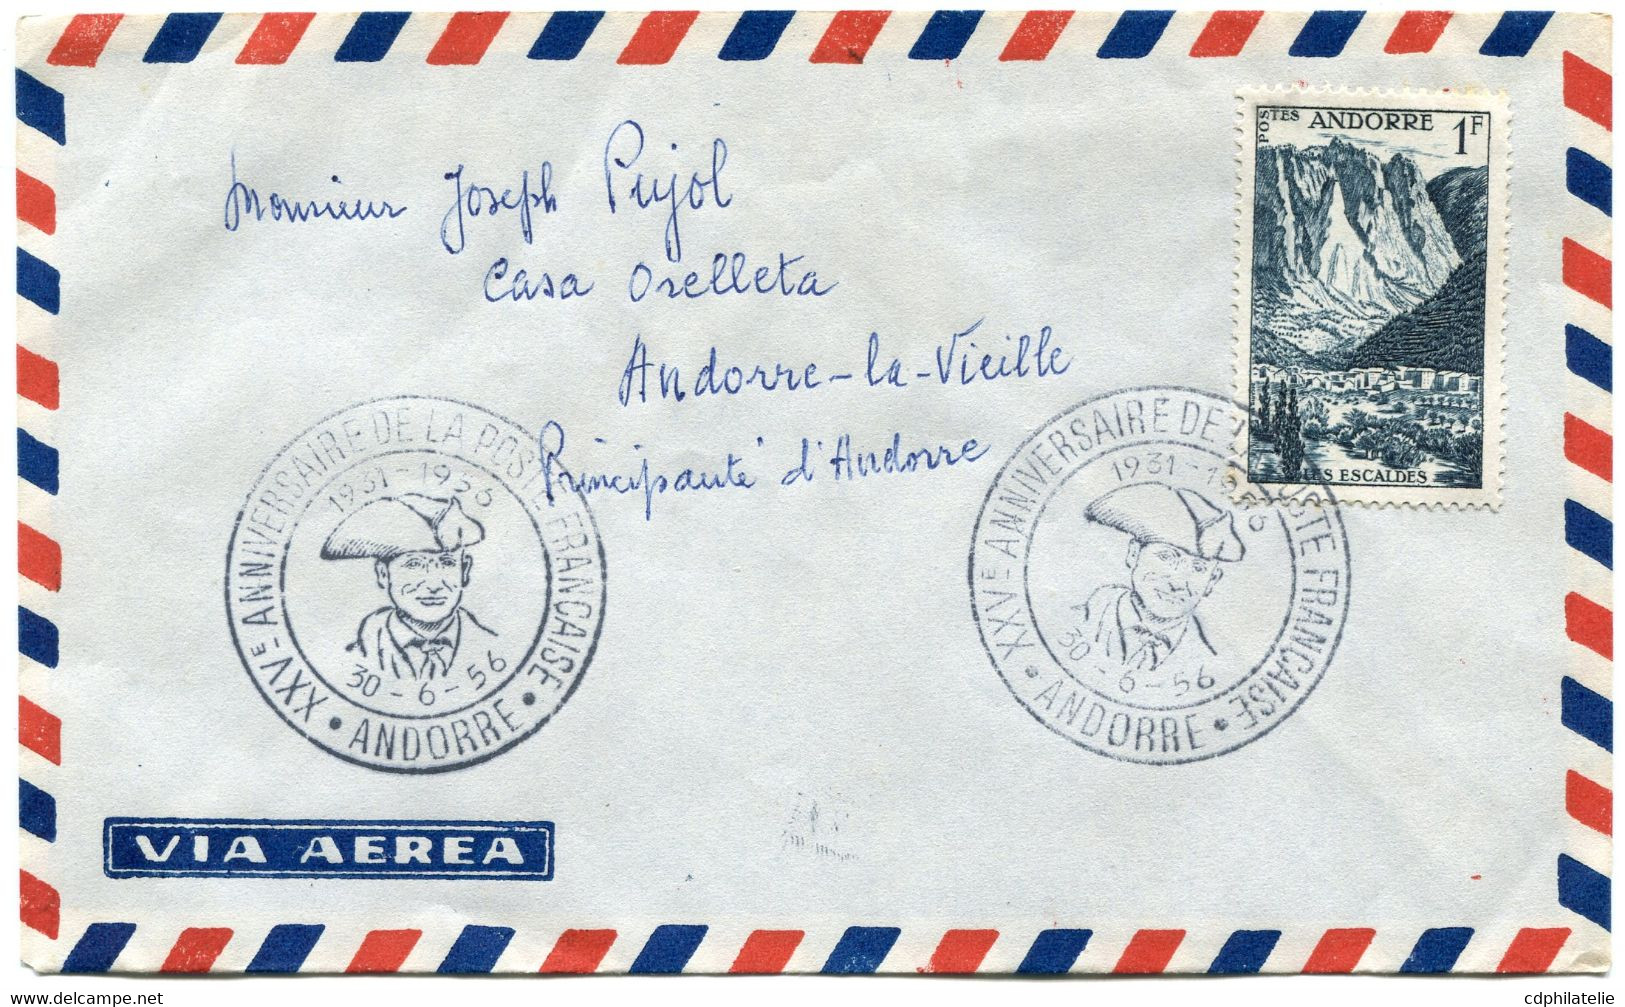 ANDORRE FRANCAIS LETTRE PAR AVION AVEC CACHET ILLUSTRE XXVe ANNIVERSAIRE DE LA POSTE FRANCAISE 1931-1956 30-6-56 ANDORRE - Cartas & Documentos